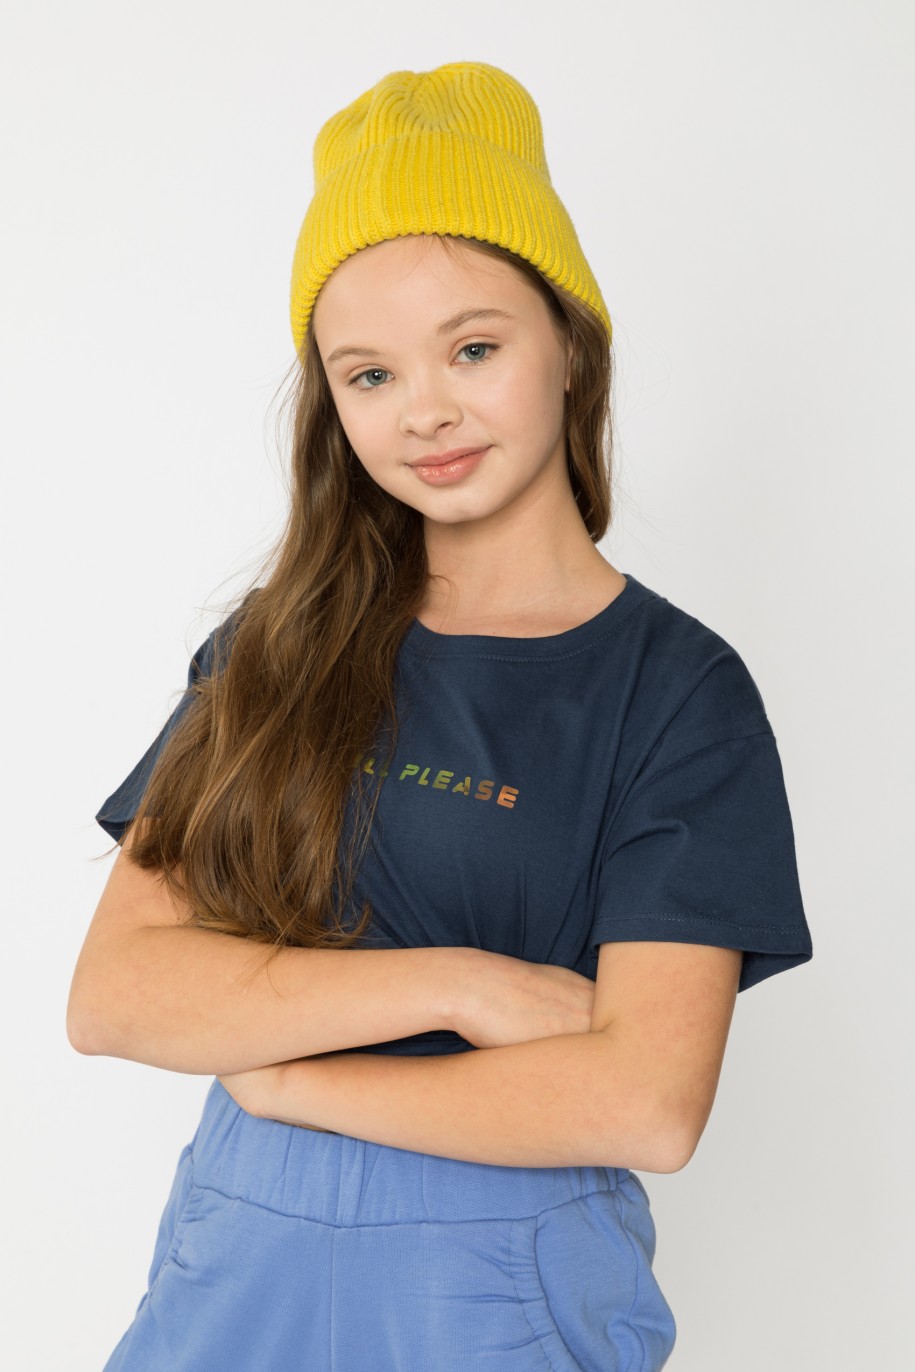 Granatowy t-shirt dla dziewczyny - 31856